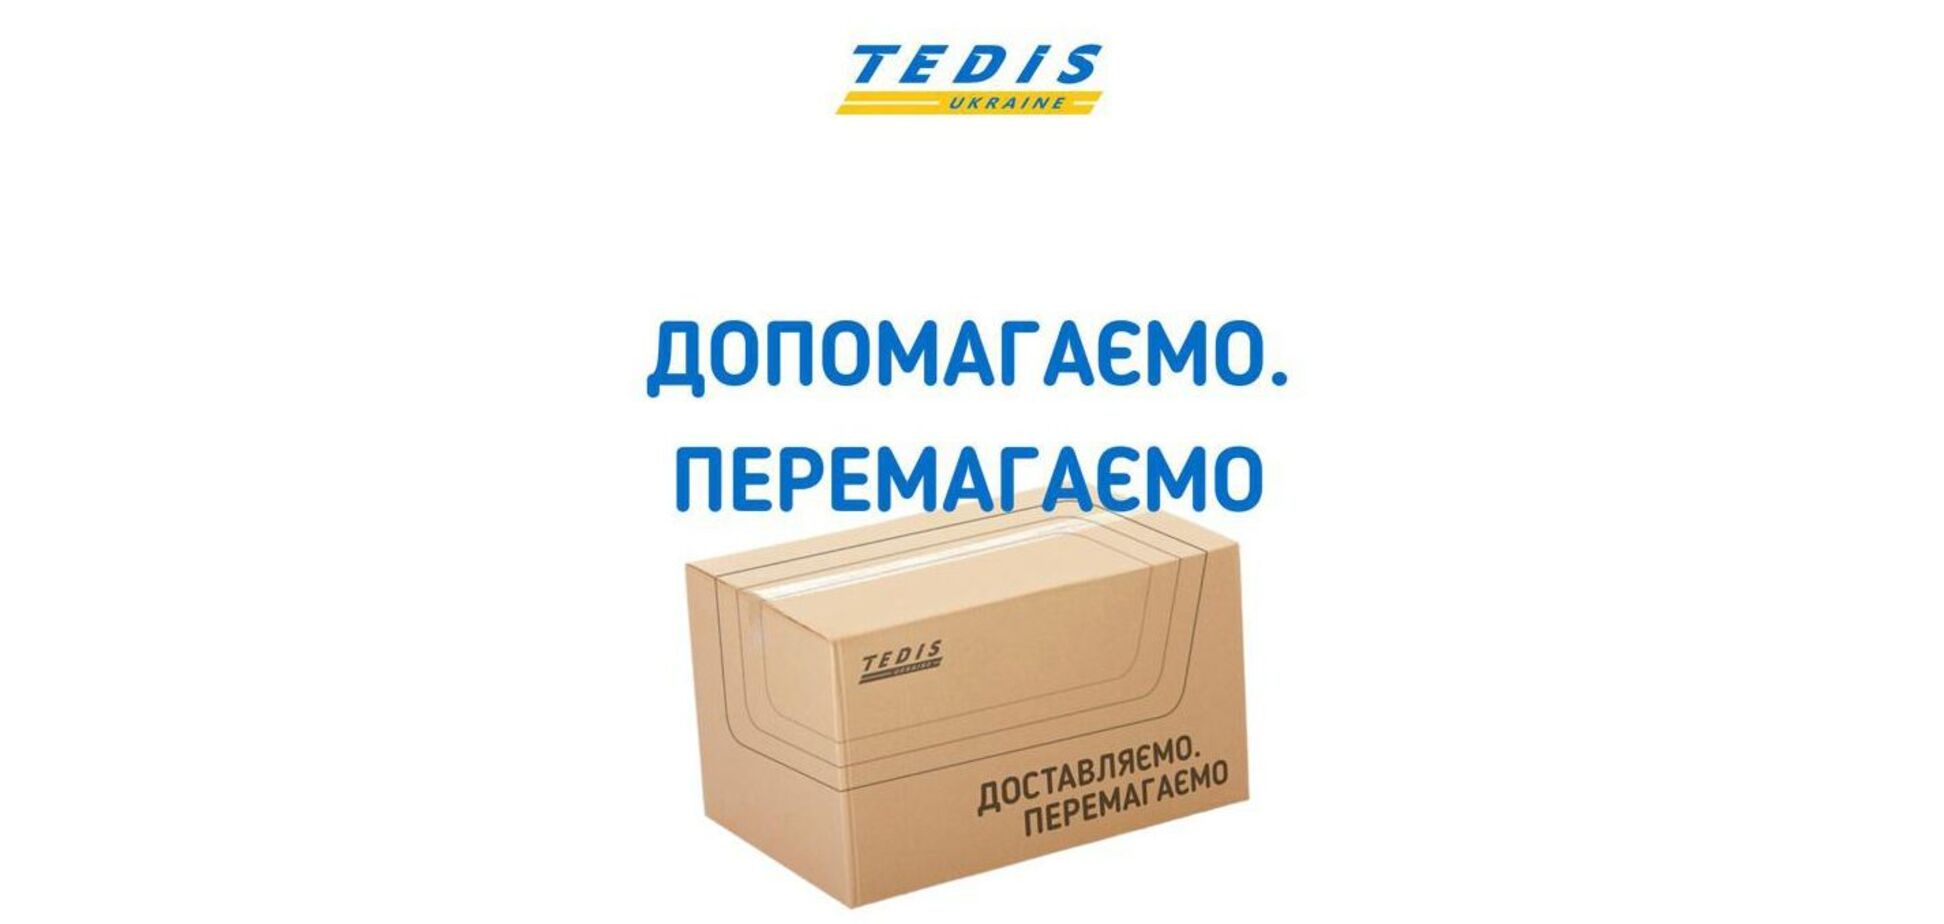 'ТЕДИС Украина' создал Координационный центр по бесплатной доставке гуманитарных грузов